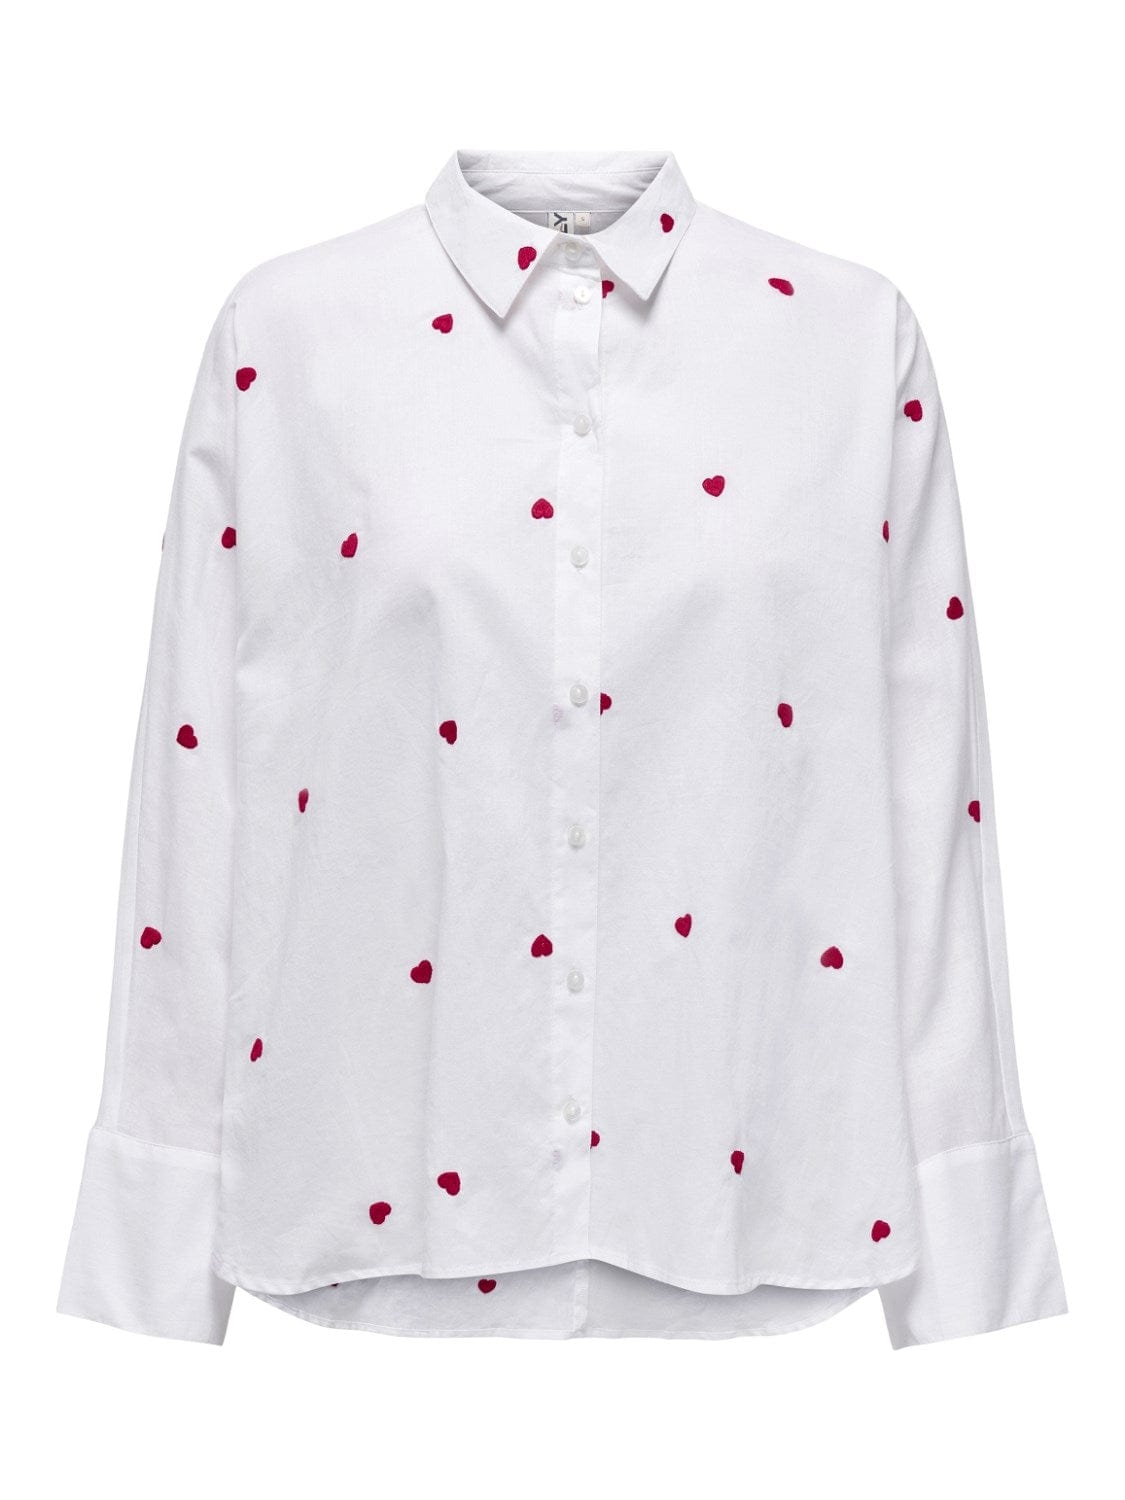 Se Hvid skjorte med Røde Hjerter - Lina - Only hos stilkompagniet.dk